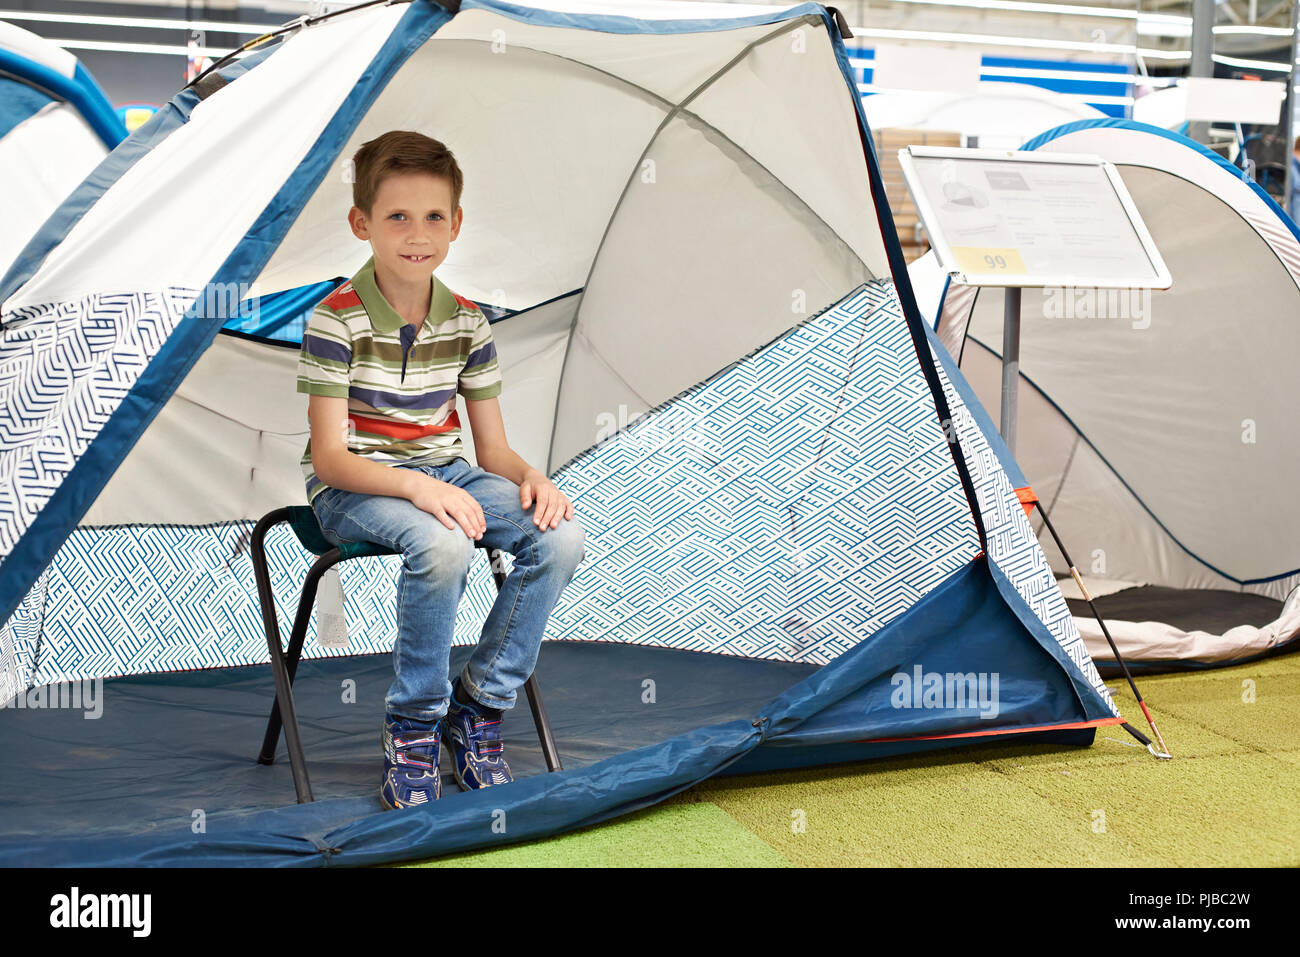 Junge in einer touristische Zelt in einem Sportgeschäft Stockfoto